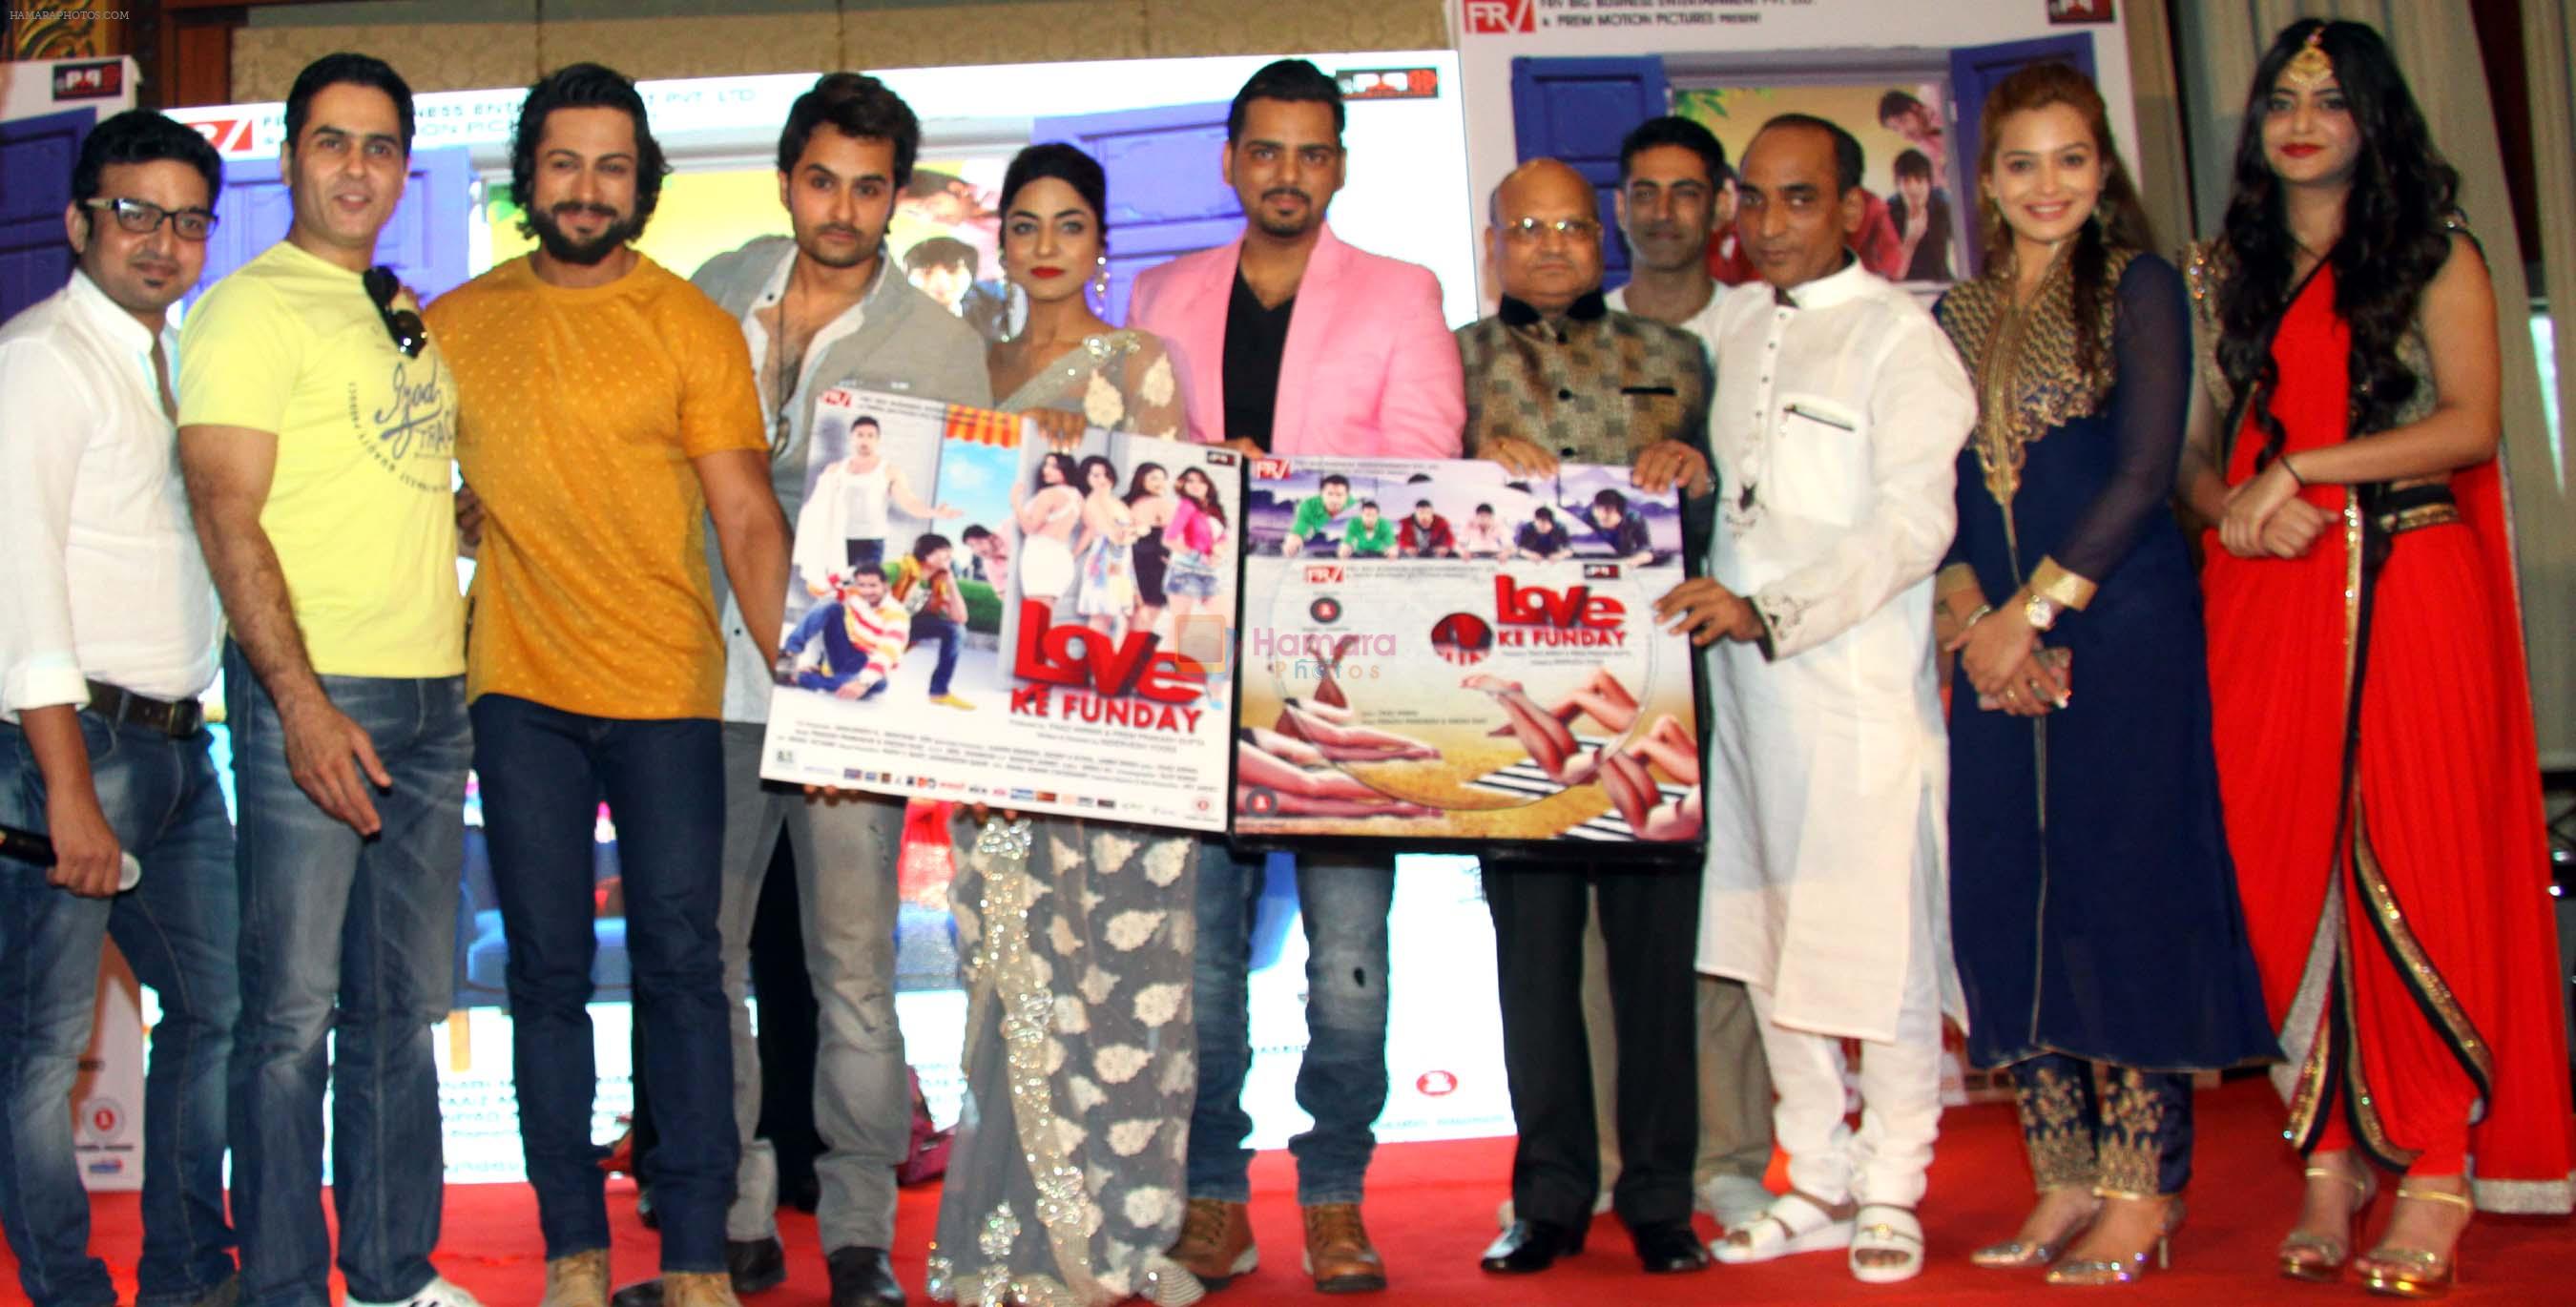 indervesh,aman,shaleen,manjunath n,rishank,ritika,harshvardhan,prem,tarun,faaiz anwar,samiksha & sufi gulati at Love Ke Funday film launch in Mumbai on 22nd Jun